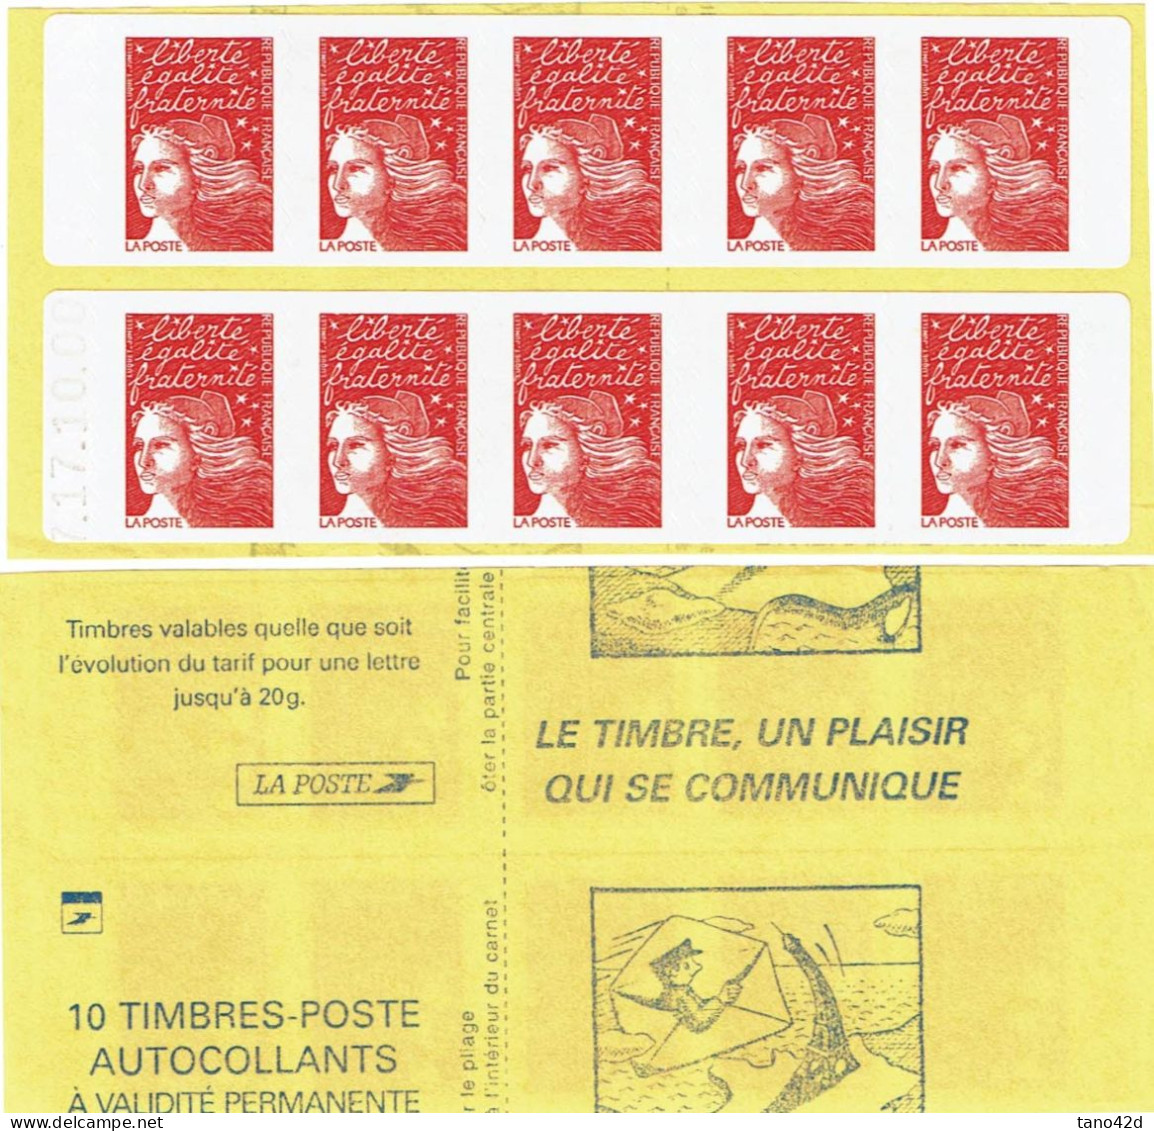 CARNETS DE FRANCE -  CARNET "MARIANNE DE LUQUET"  POUR SAGEM Y/T 3419-12 DATE 17.10.00  VARIETE DE DECOUPE - Moderne : 1959-...